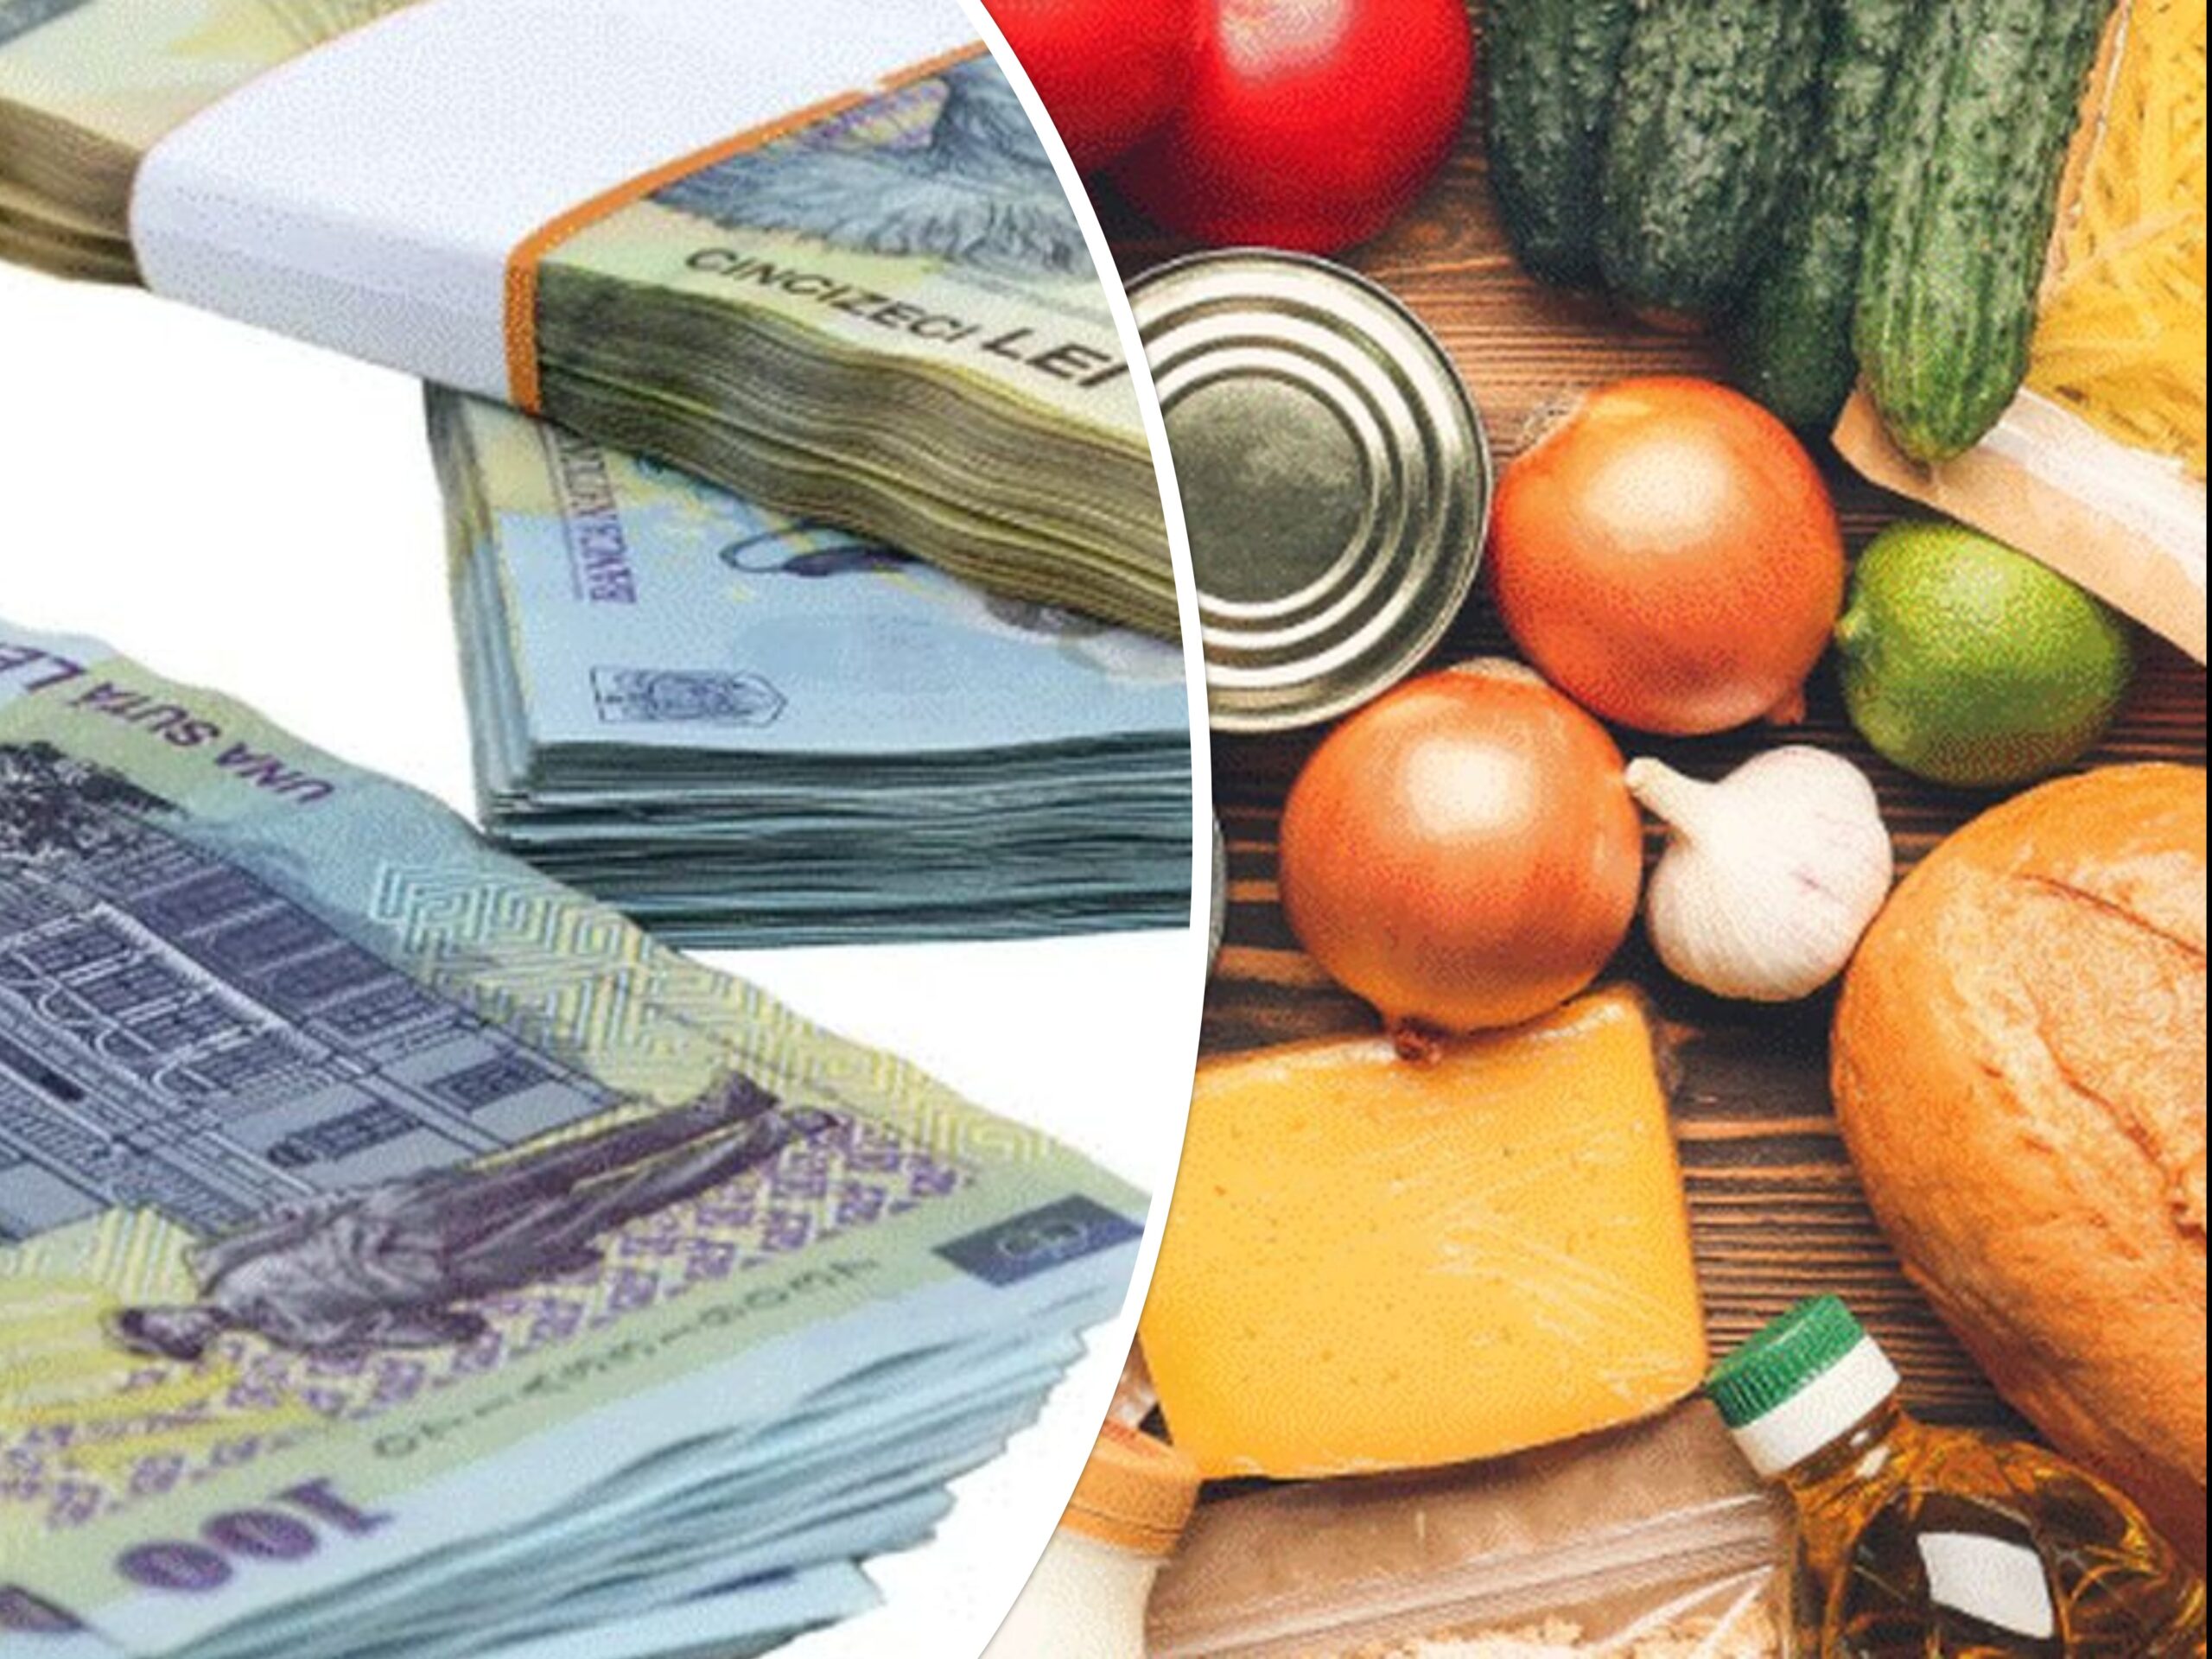 Vești bune de la premier și ministrul agriculturii cu privire la prețurile plafonate la alimentele de bază